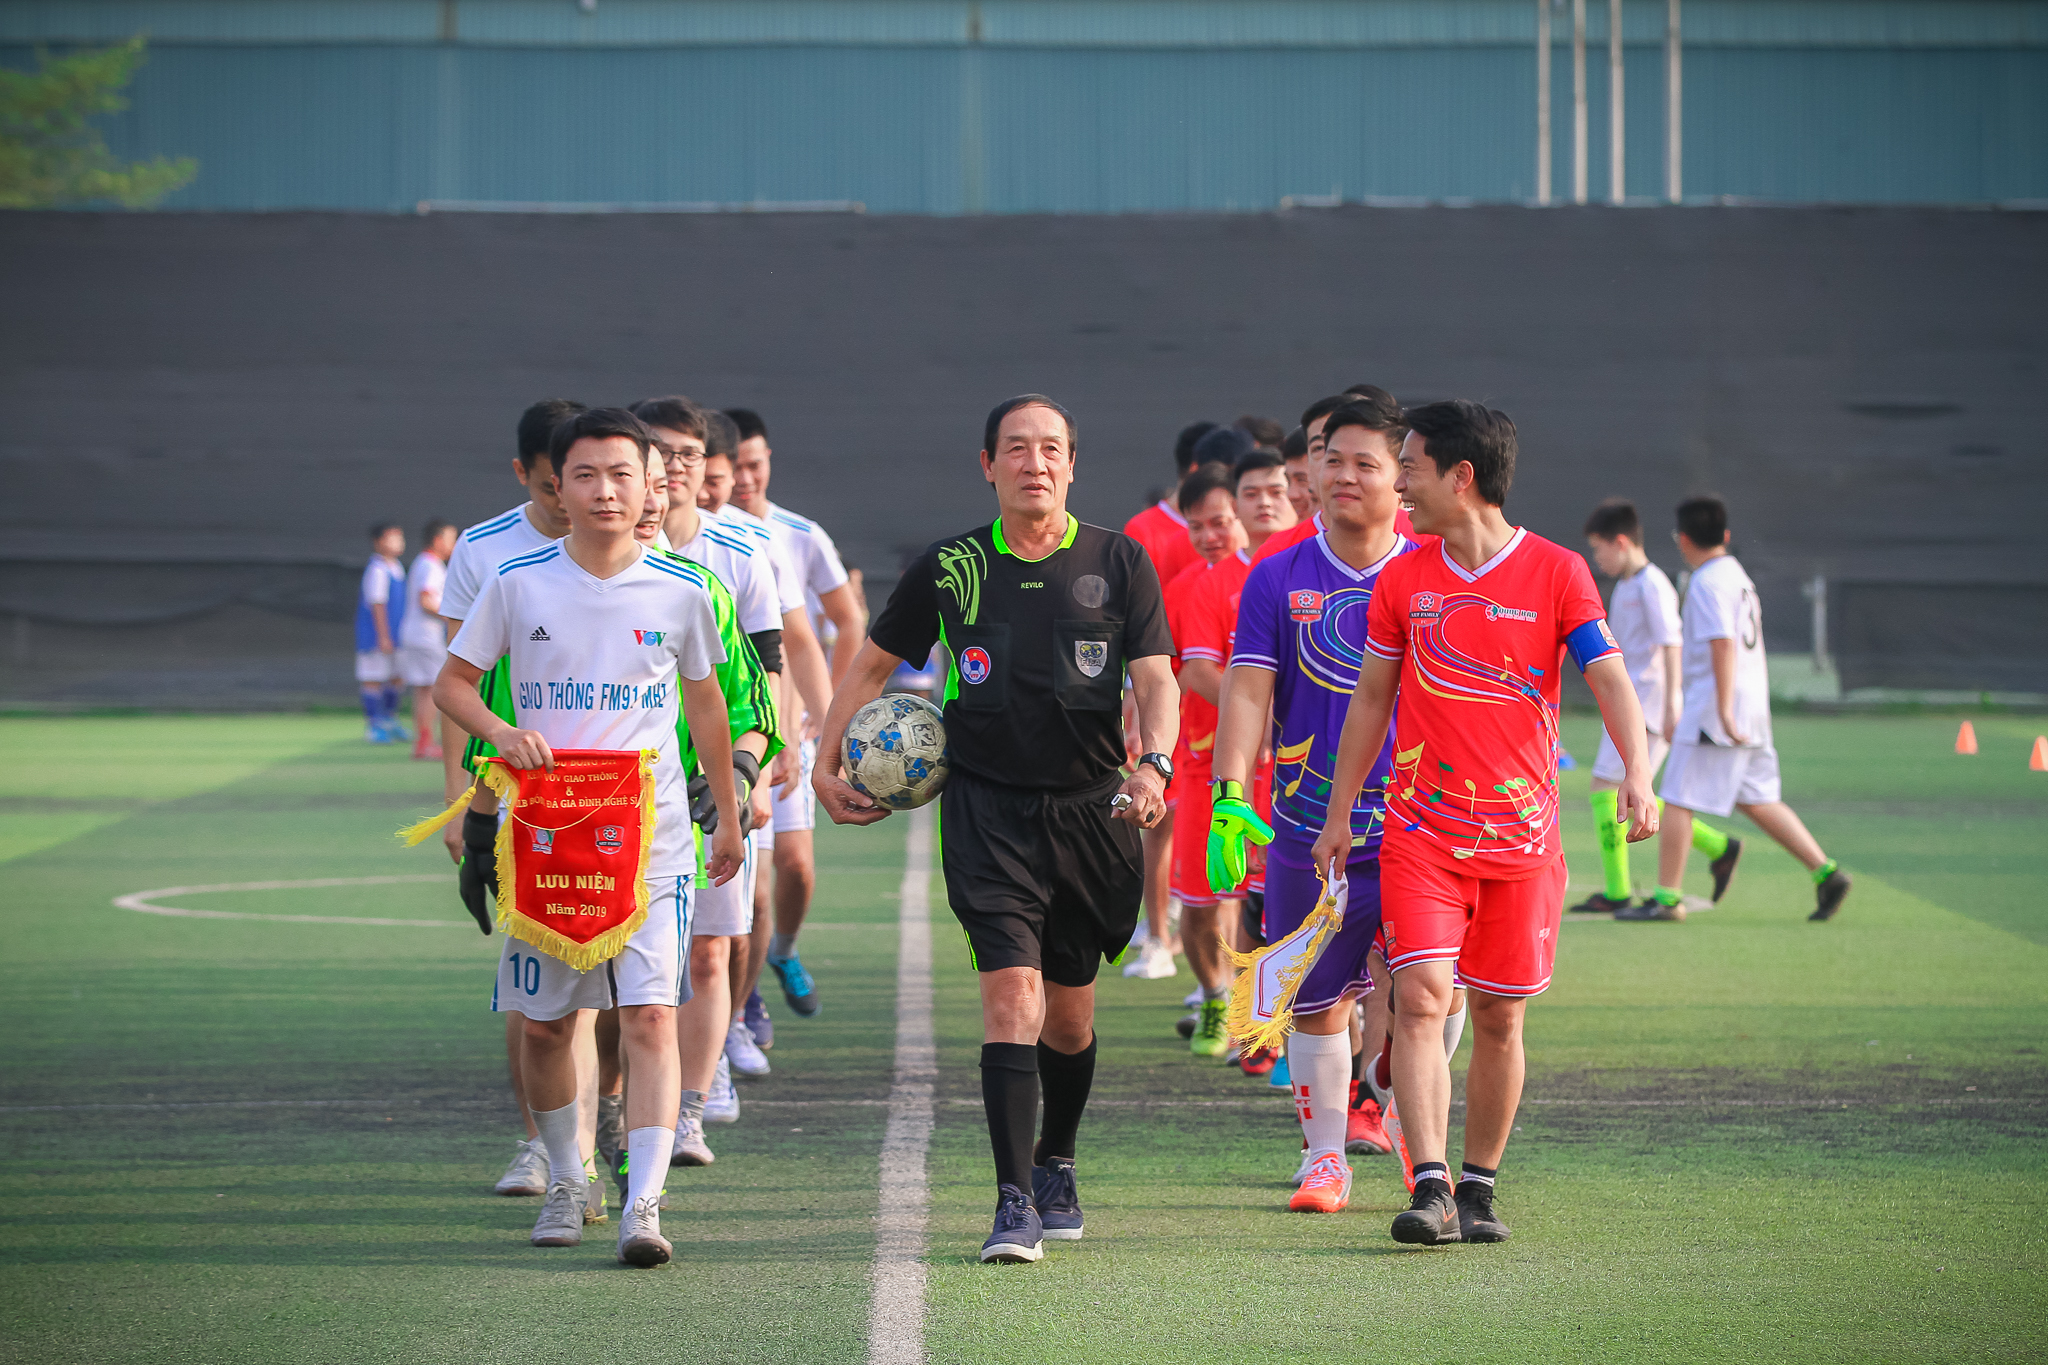 Trận chung kết giữa FC VOV Giao thông (áo trắng) và FC Art Family (áo đỏ) chính thức diễn ra